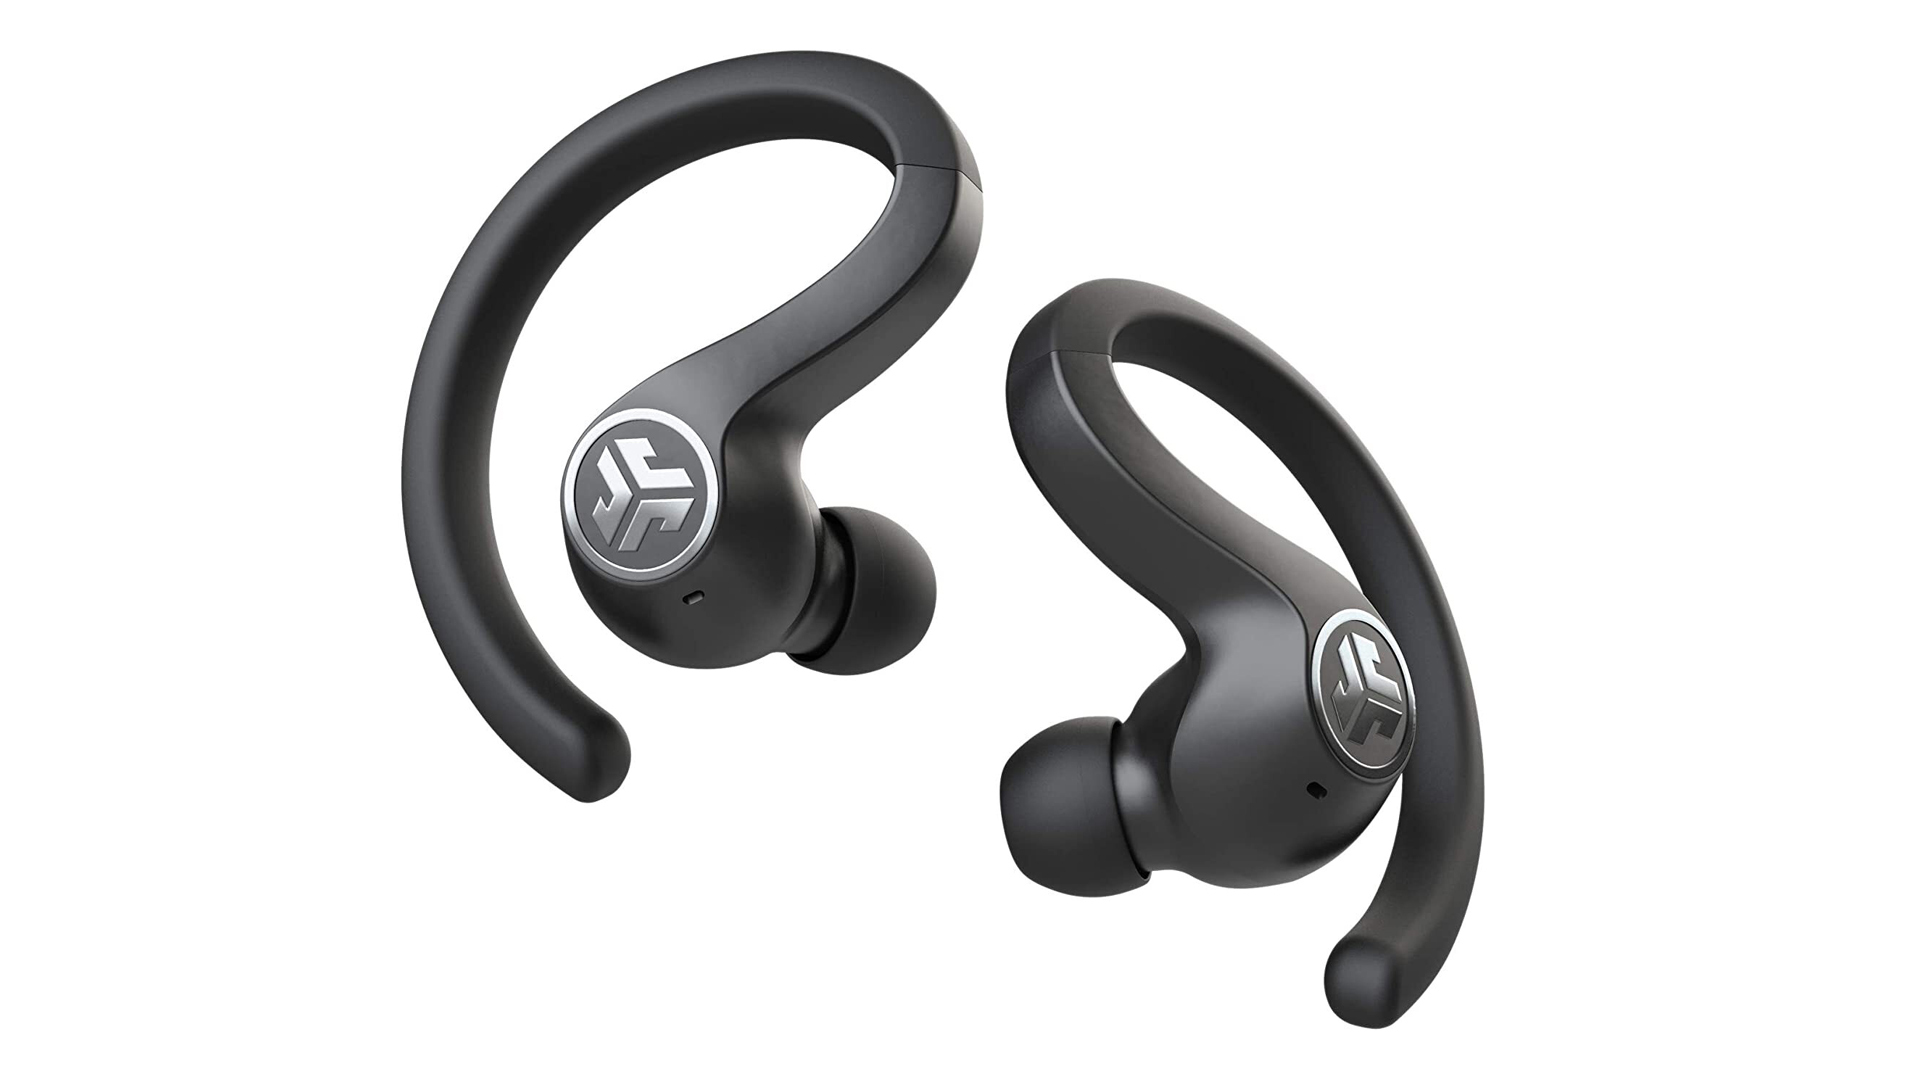 Running headphones deals: Image of JLab headphones